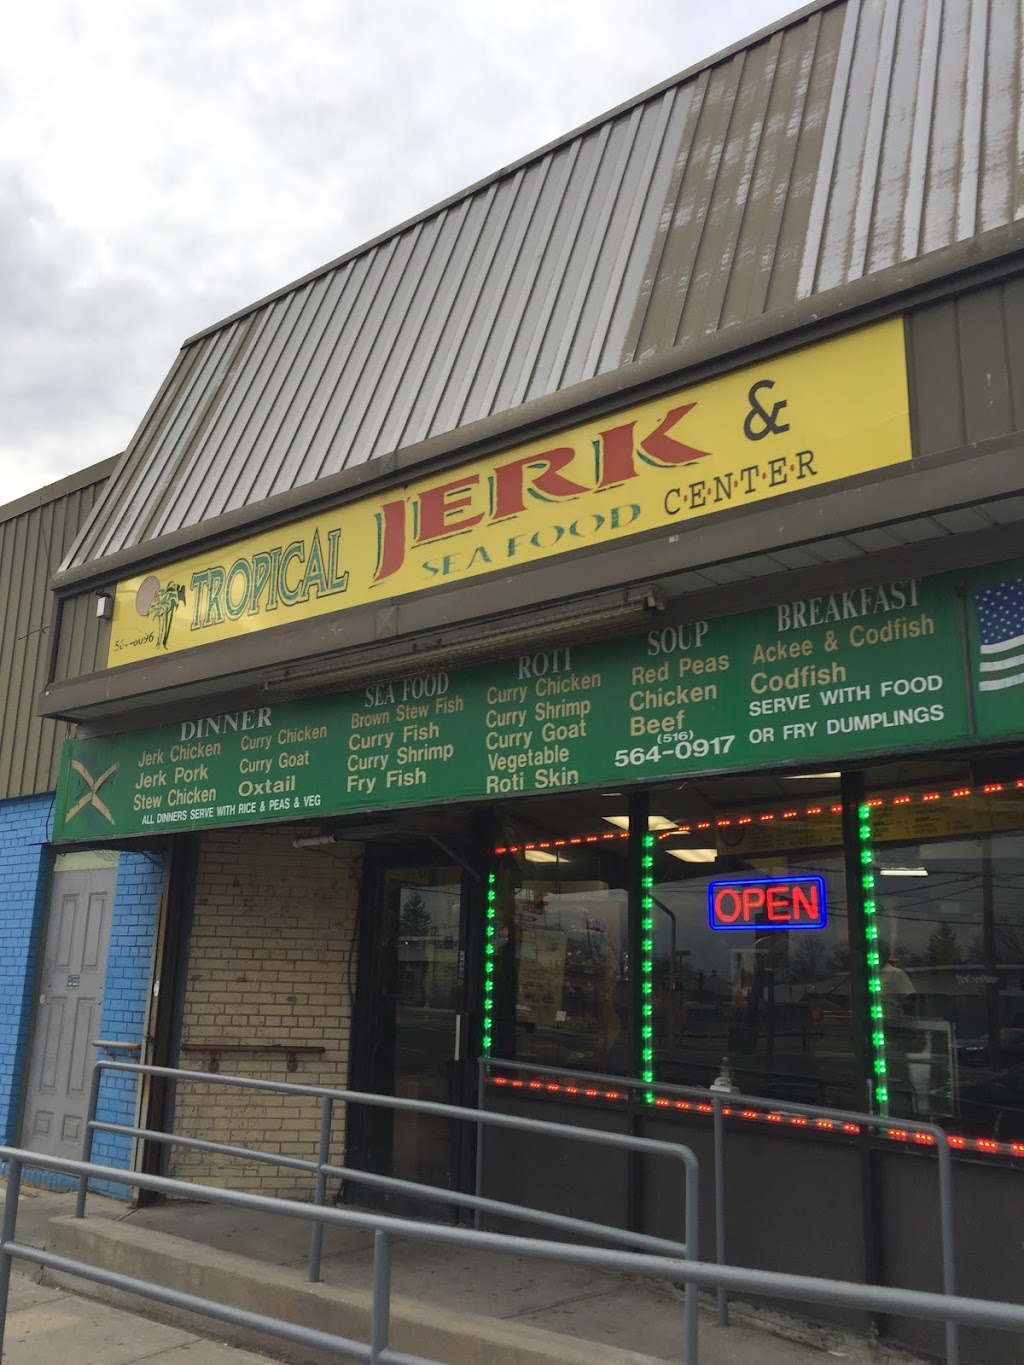 Tropical Jerk Center & Seafood | 651 Jerusalem Ave, Uniondale, NY 11553 | Phone: (516) 564-0917